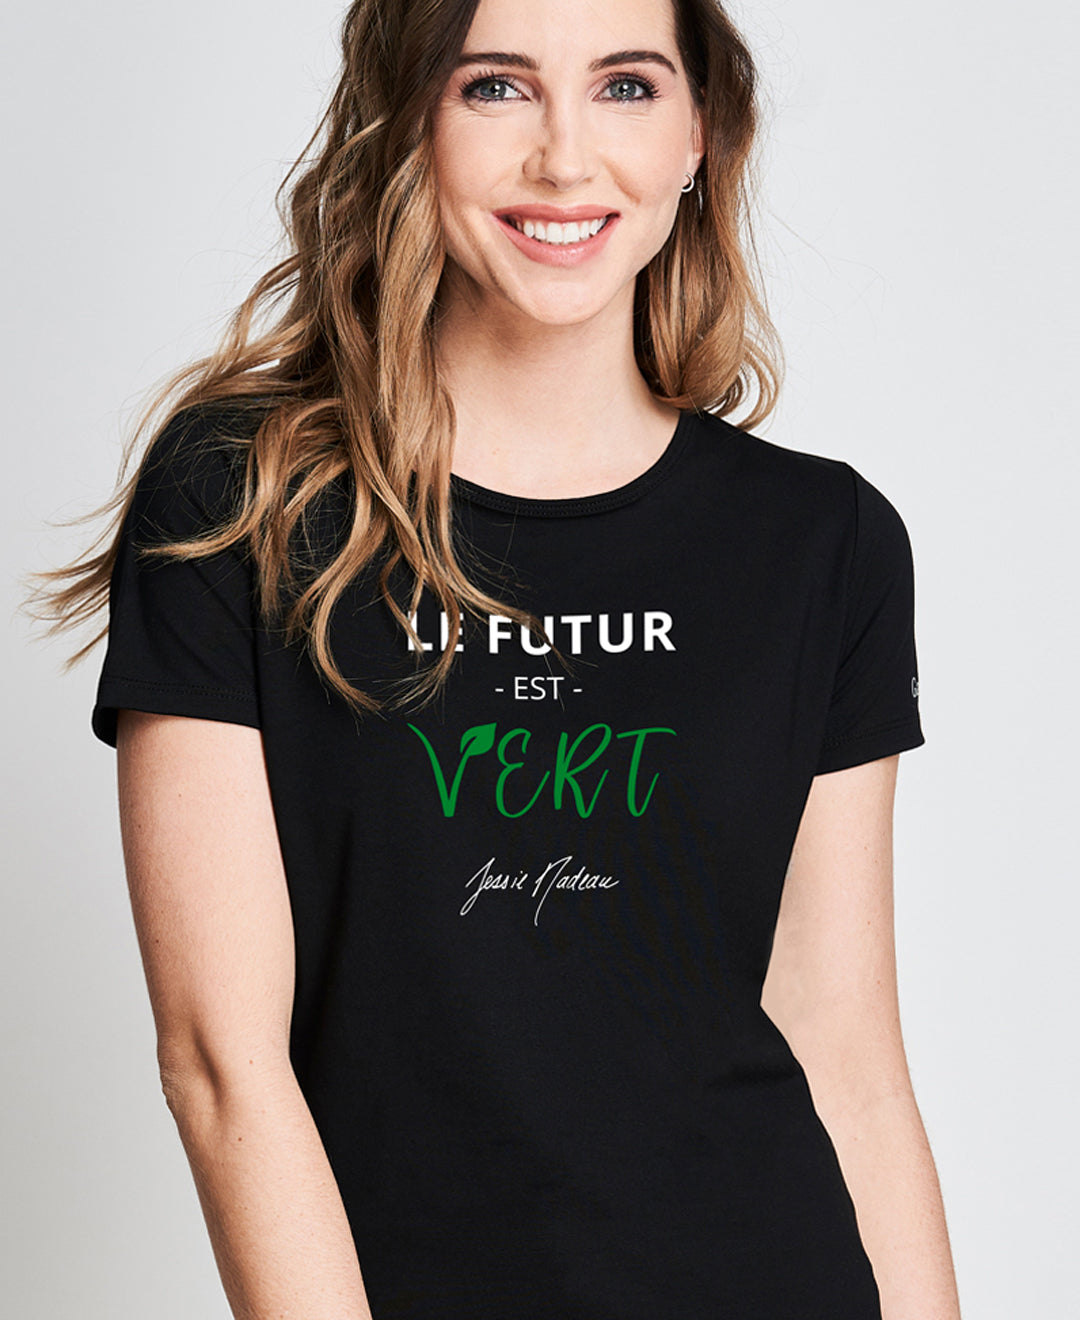 T-shirt fait au Québec en collabo avec Jessie Nadeau Noir